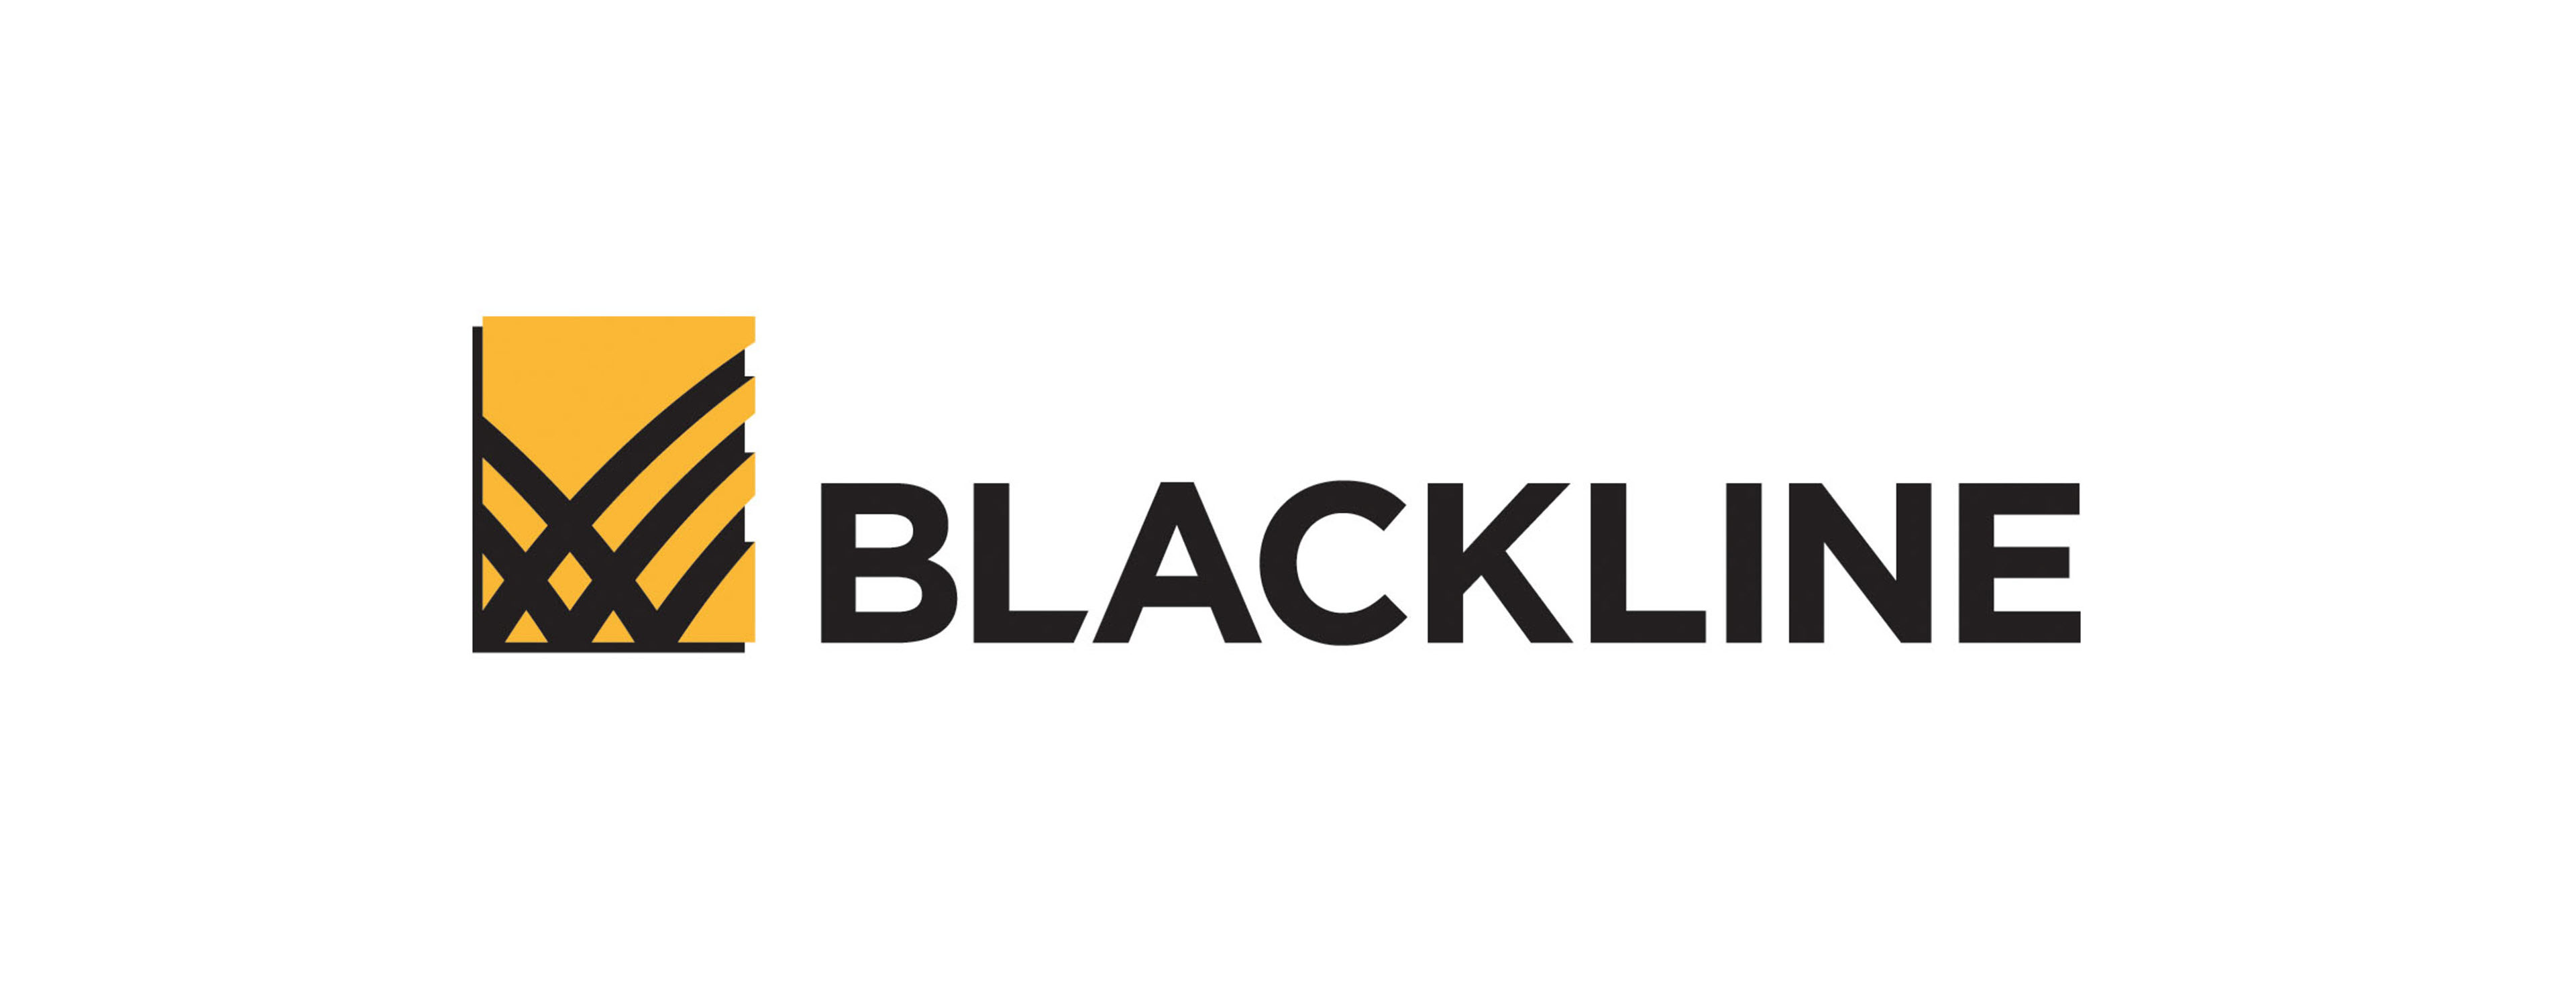             Blacklineのロゴ        